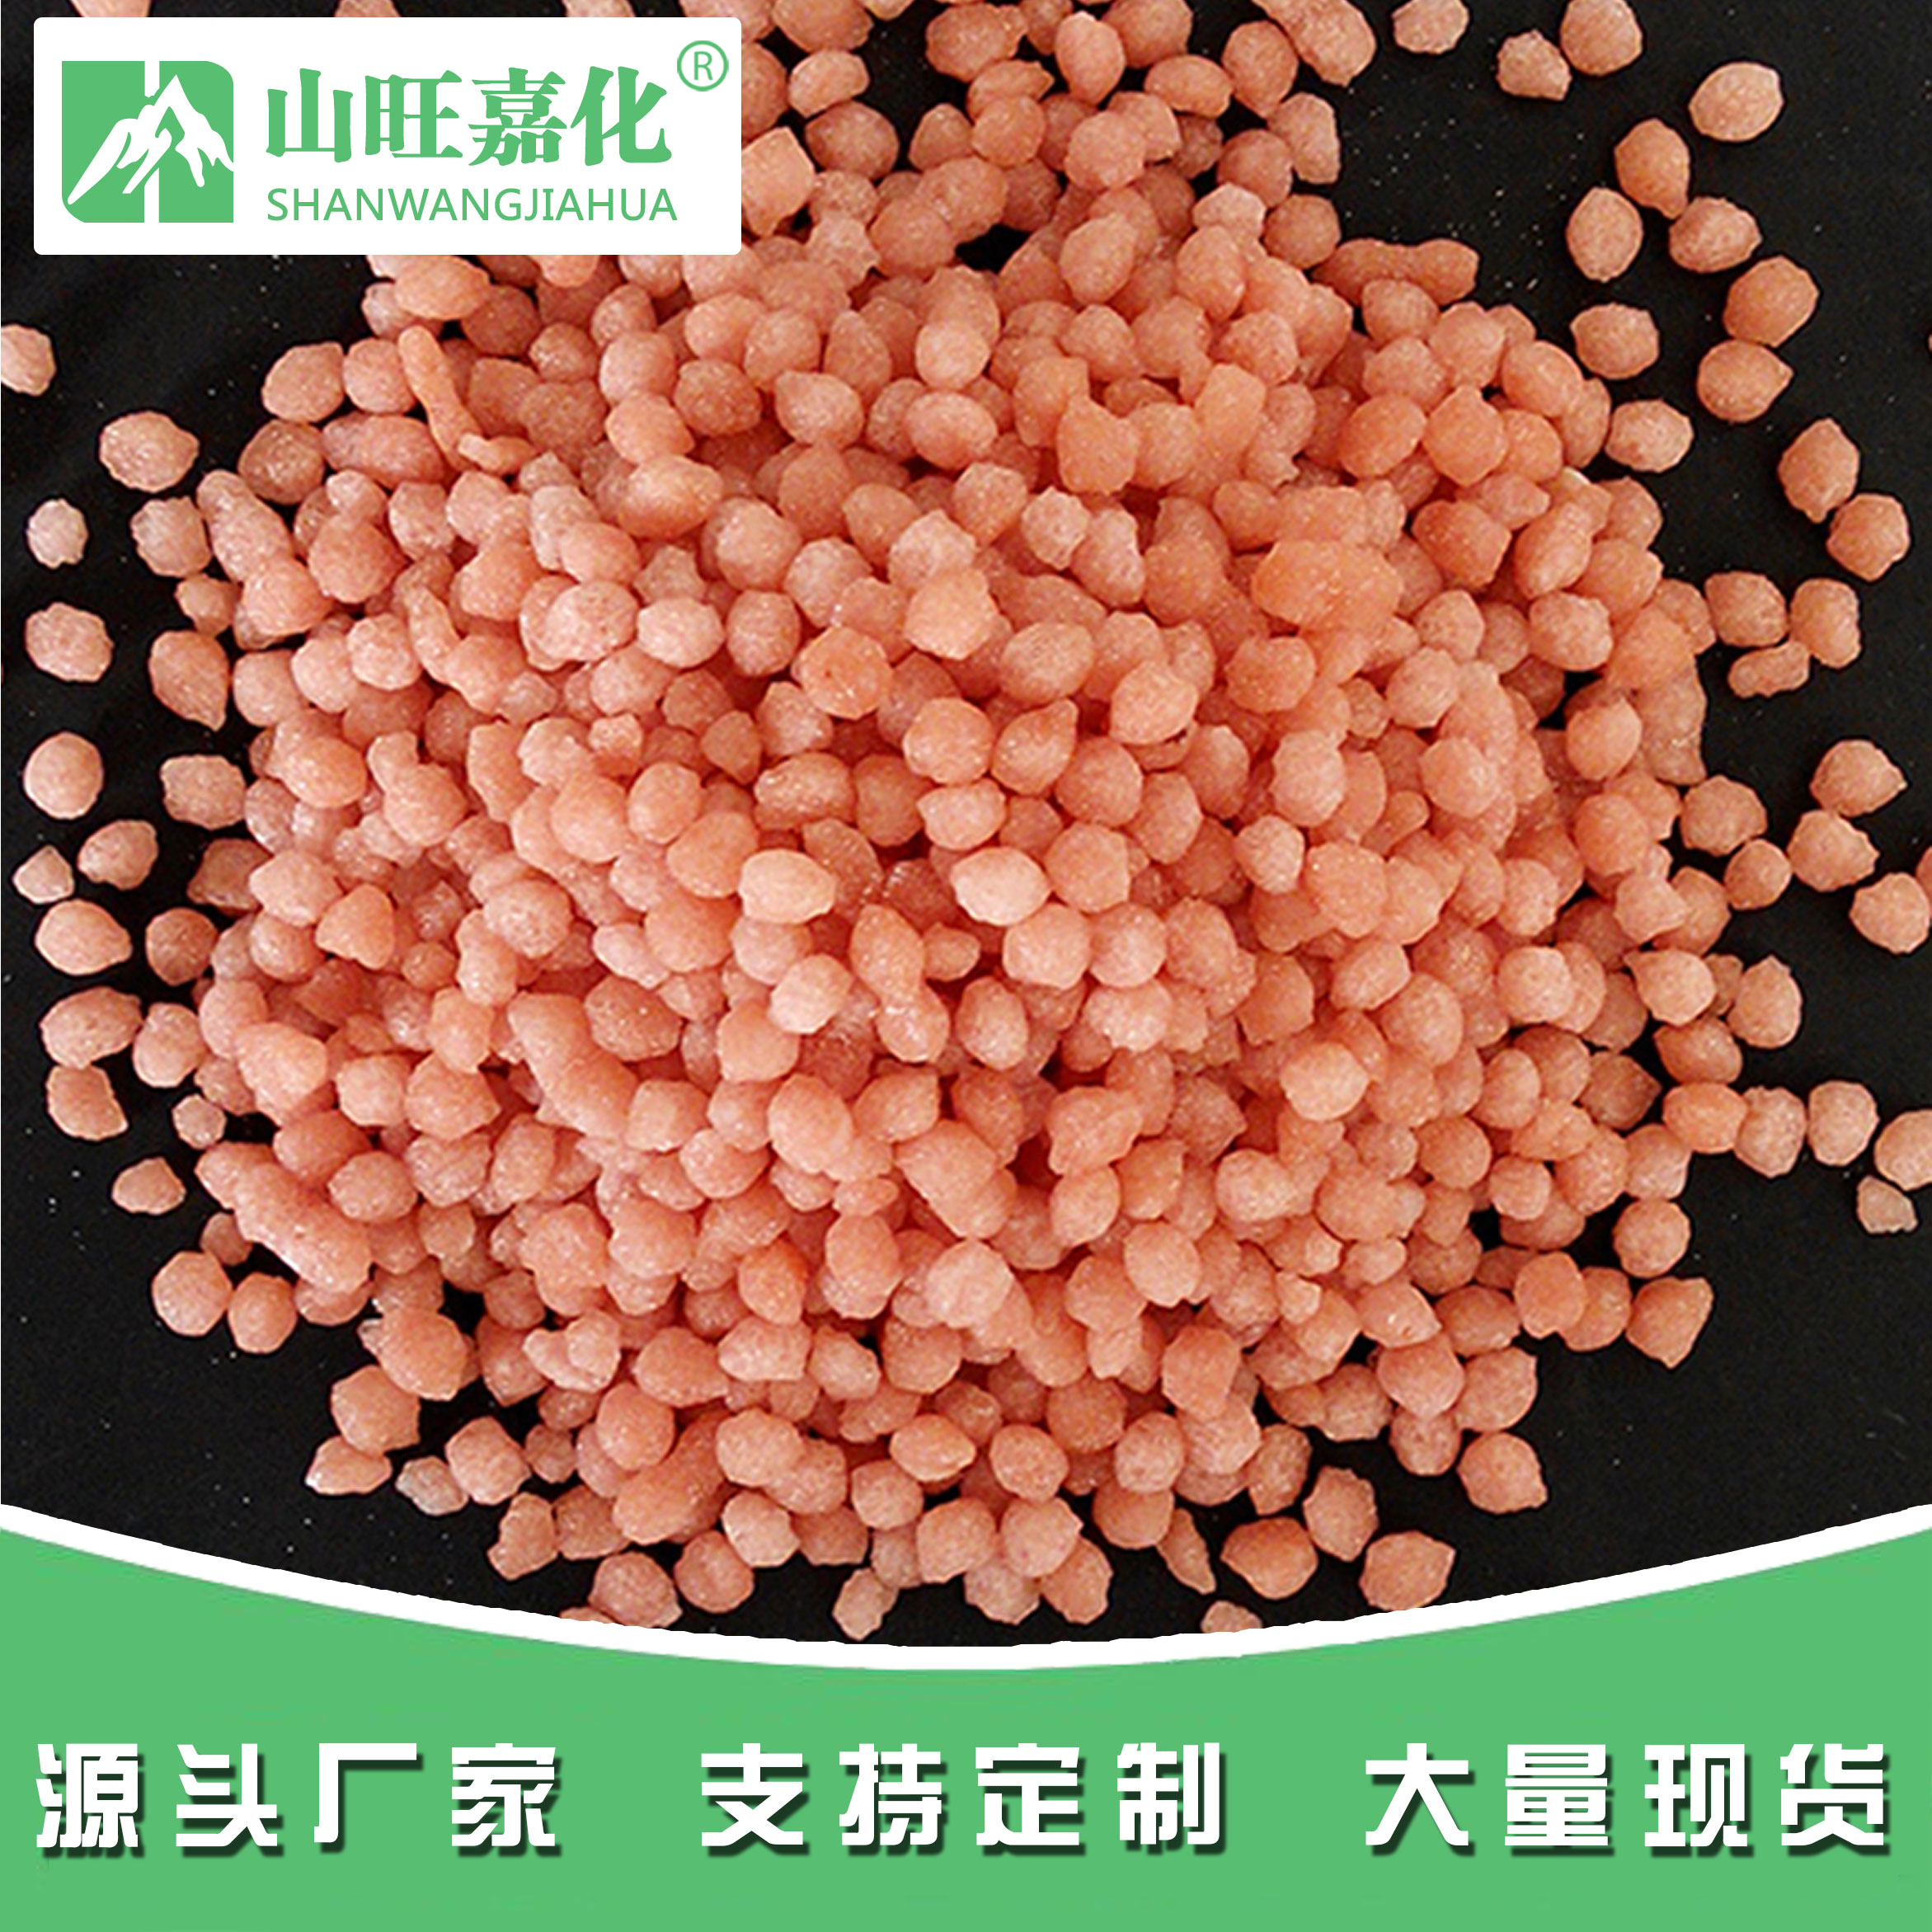 Red grain magnesium sulfate